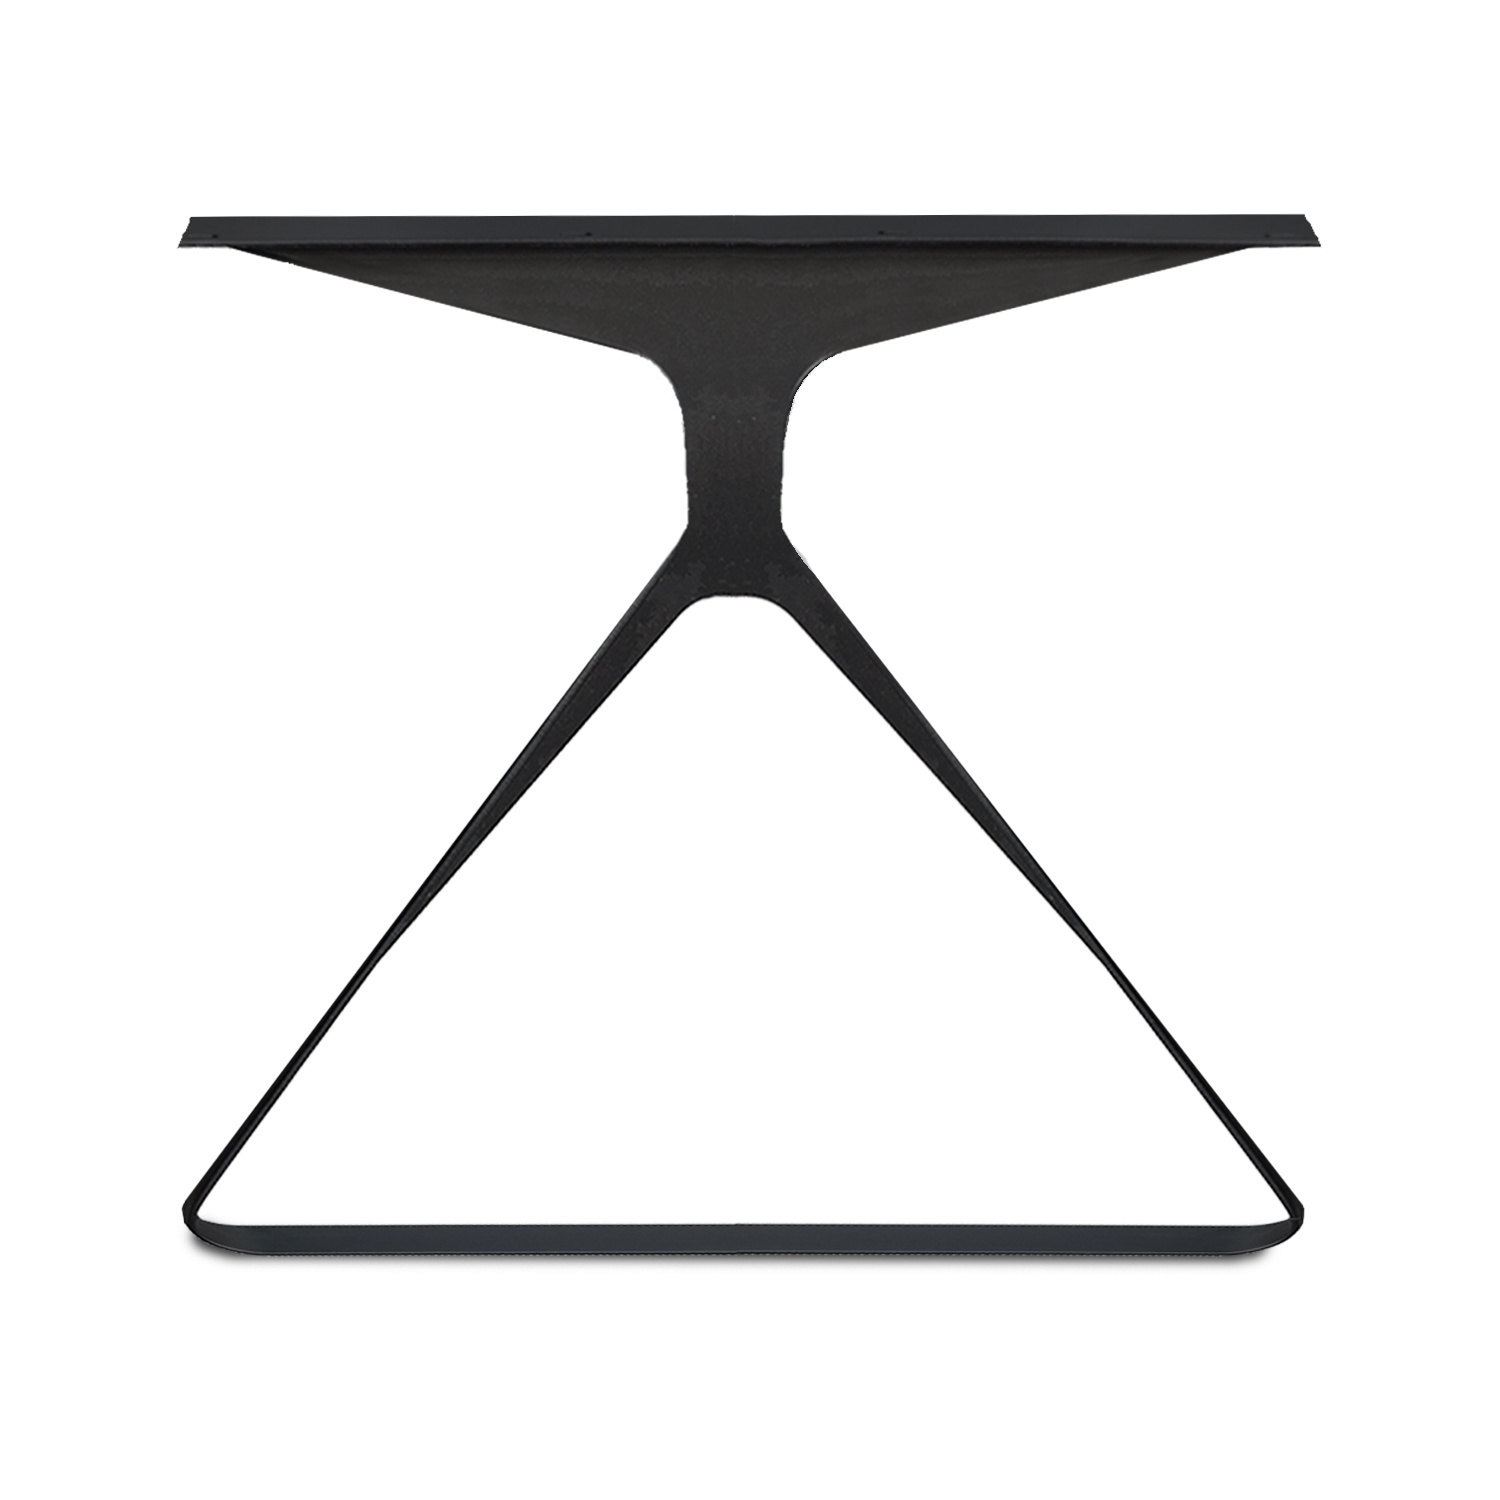  Tischbeine Y Metall SET (2 Stück) - 8x0,5 cm - 78-80 cm breit - 72 cm hoch - Dreieck-form Tischkufen / Tischgestell beschichtet - Schwarz